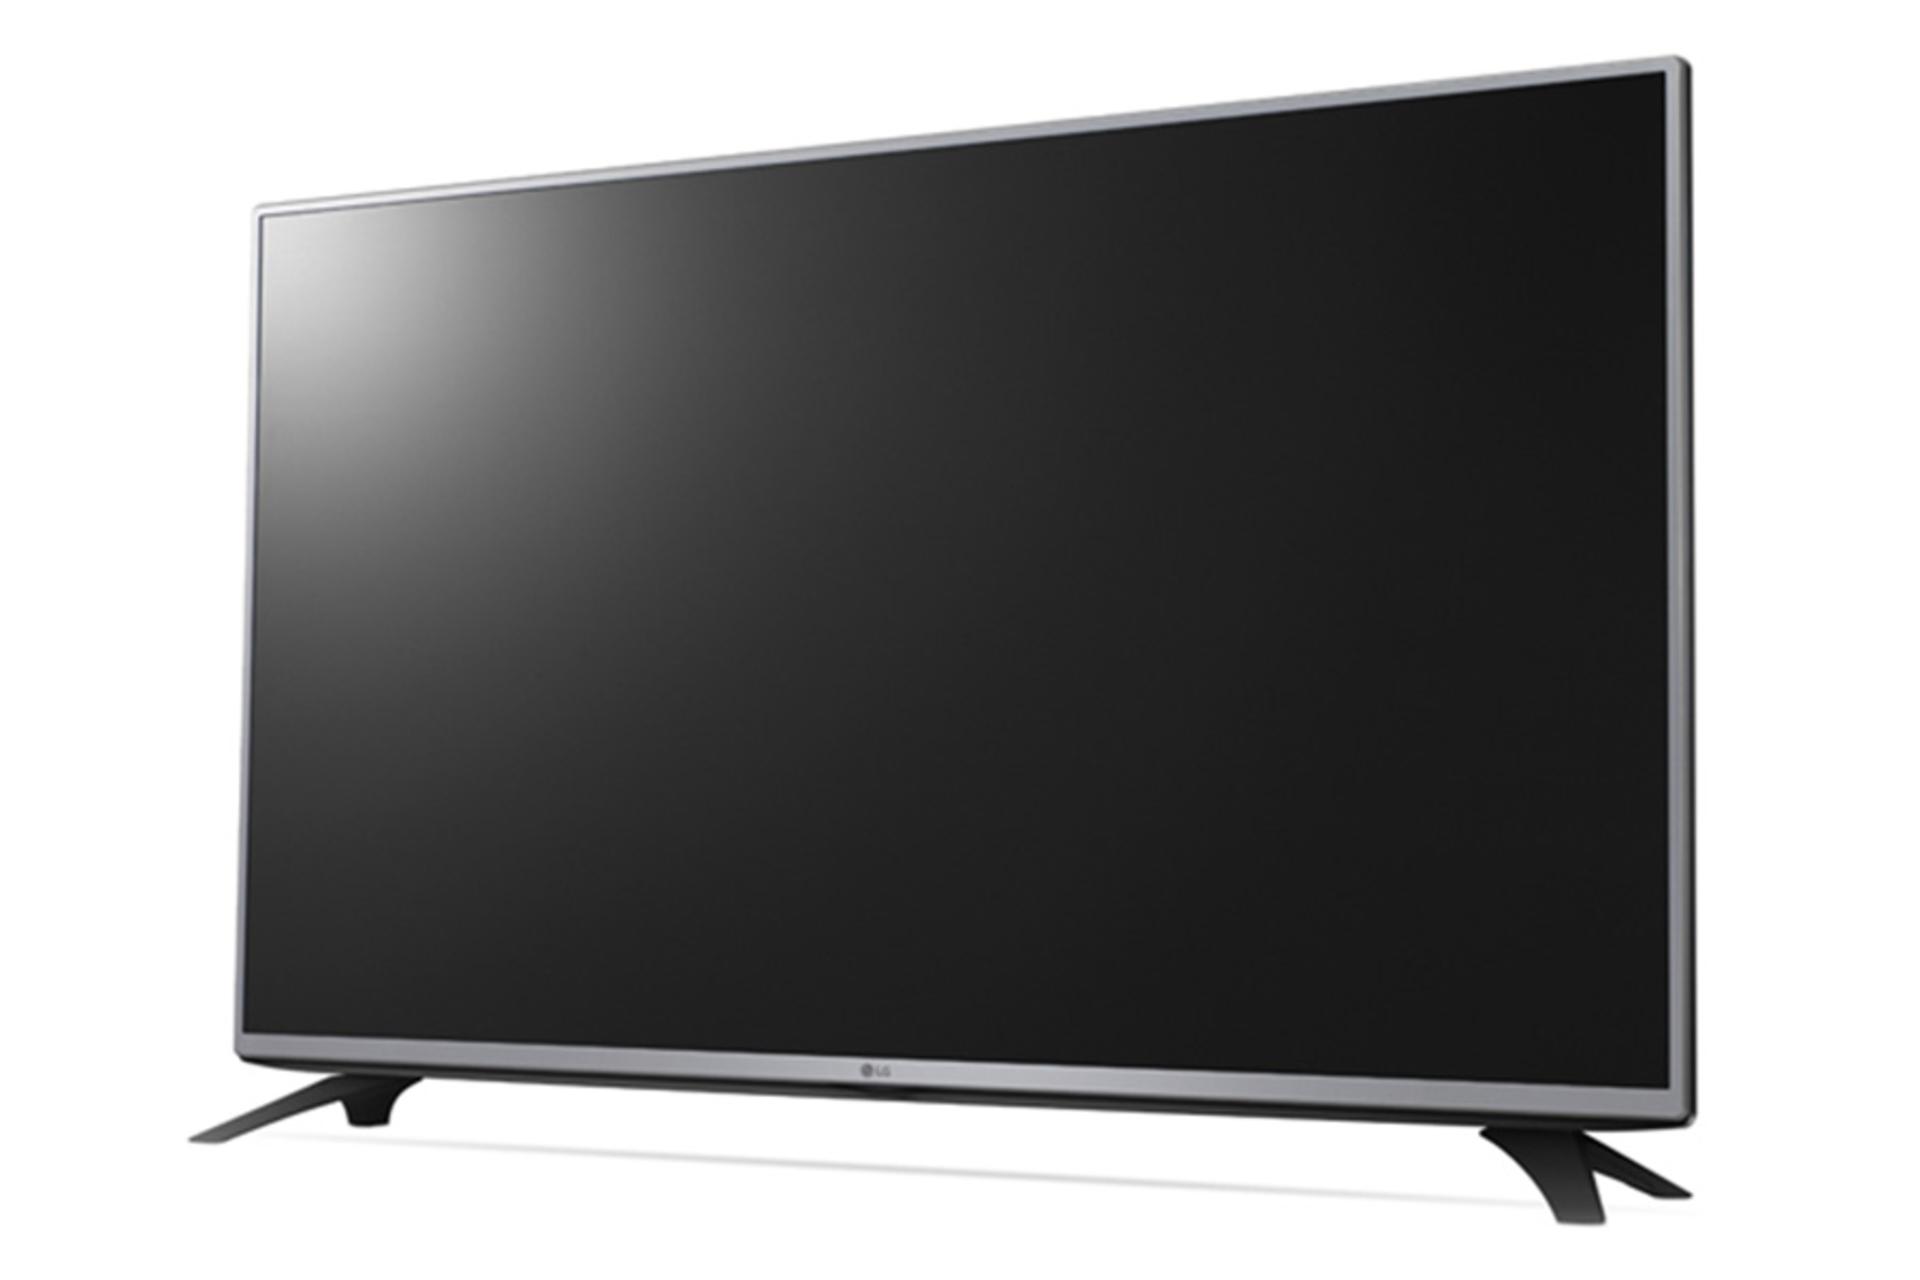 نمای نیم رخ تلویزیون ال جی LF540V مدل 43 اینچ با صفحه خاموش